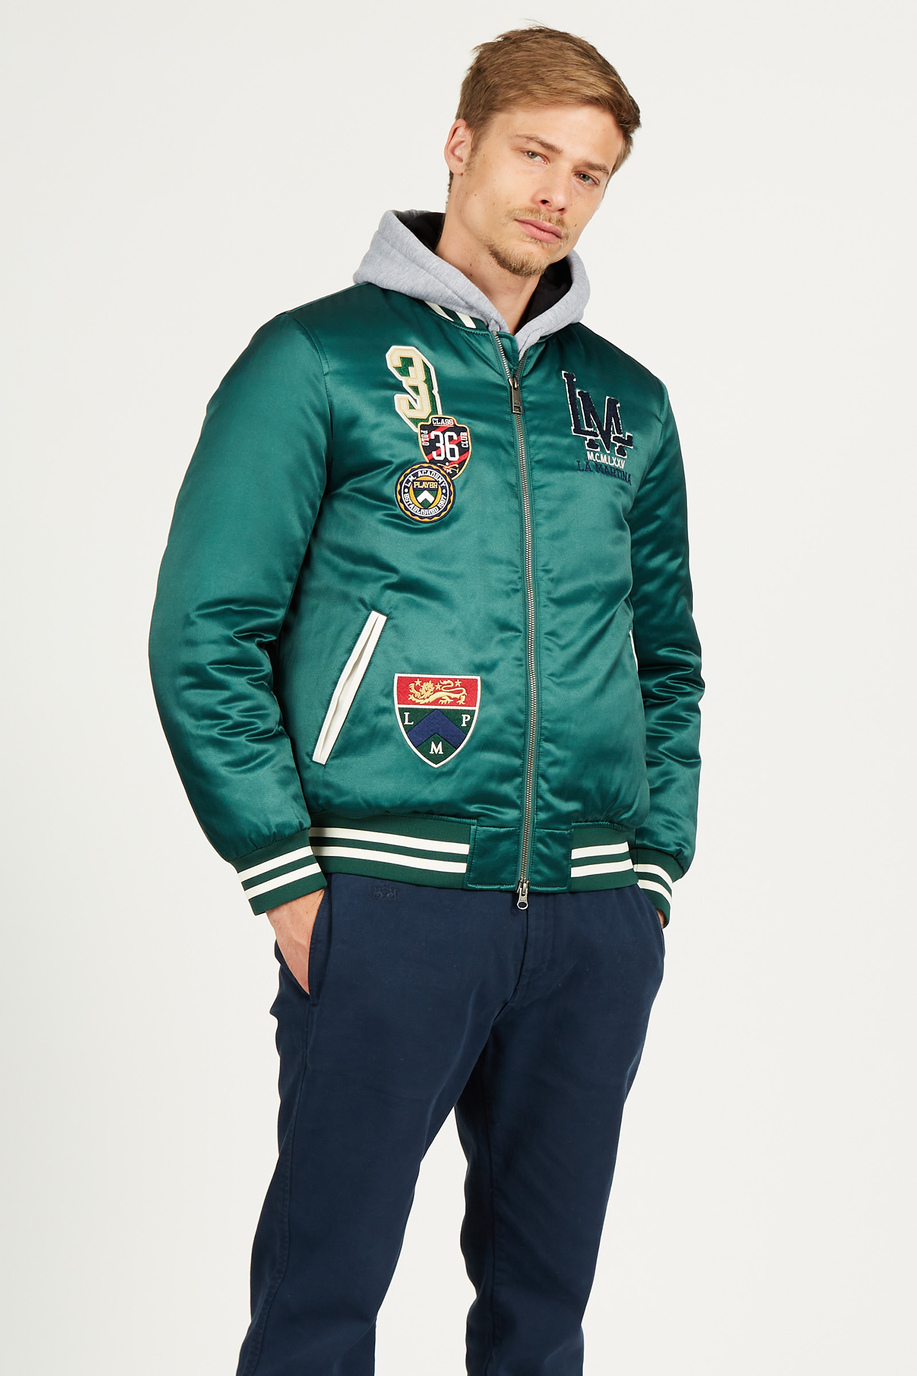 Men's bomber jacket in satin effect cotton blend, regular fit - Preview  | La Martina - Official Online Shop